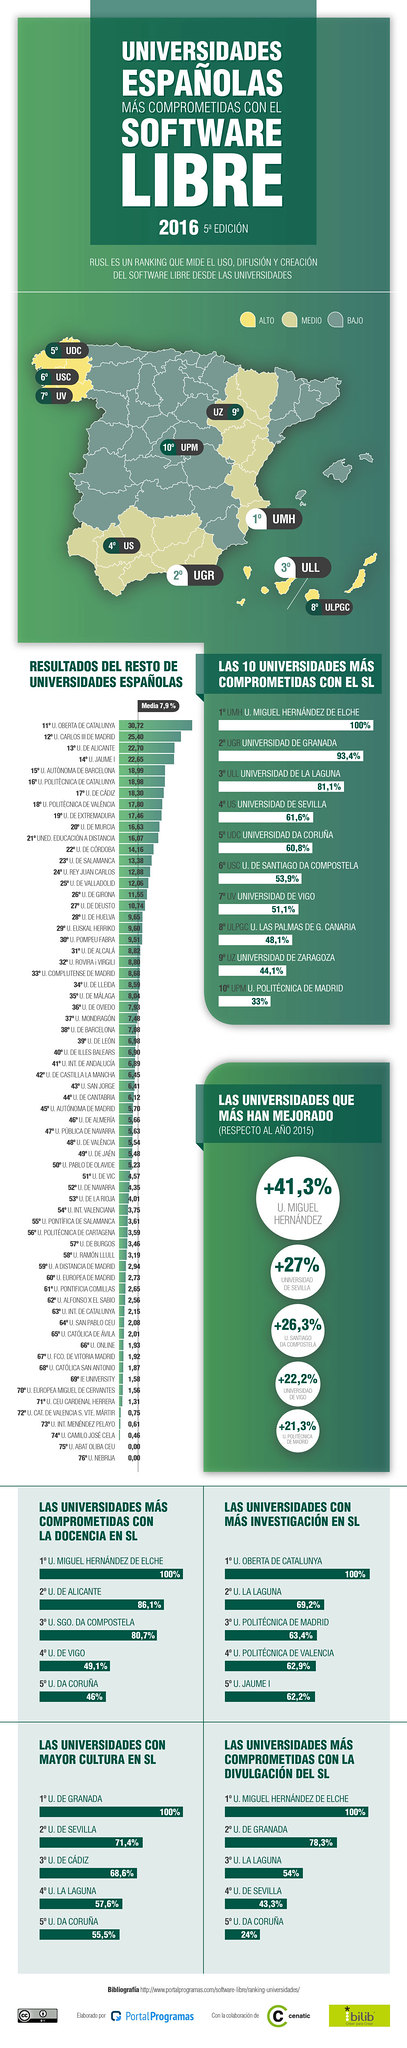 mejores-universidades-espanolas-software-libre.jpg